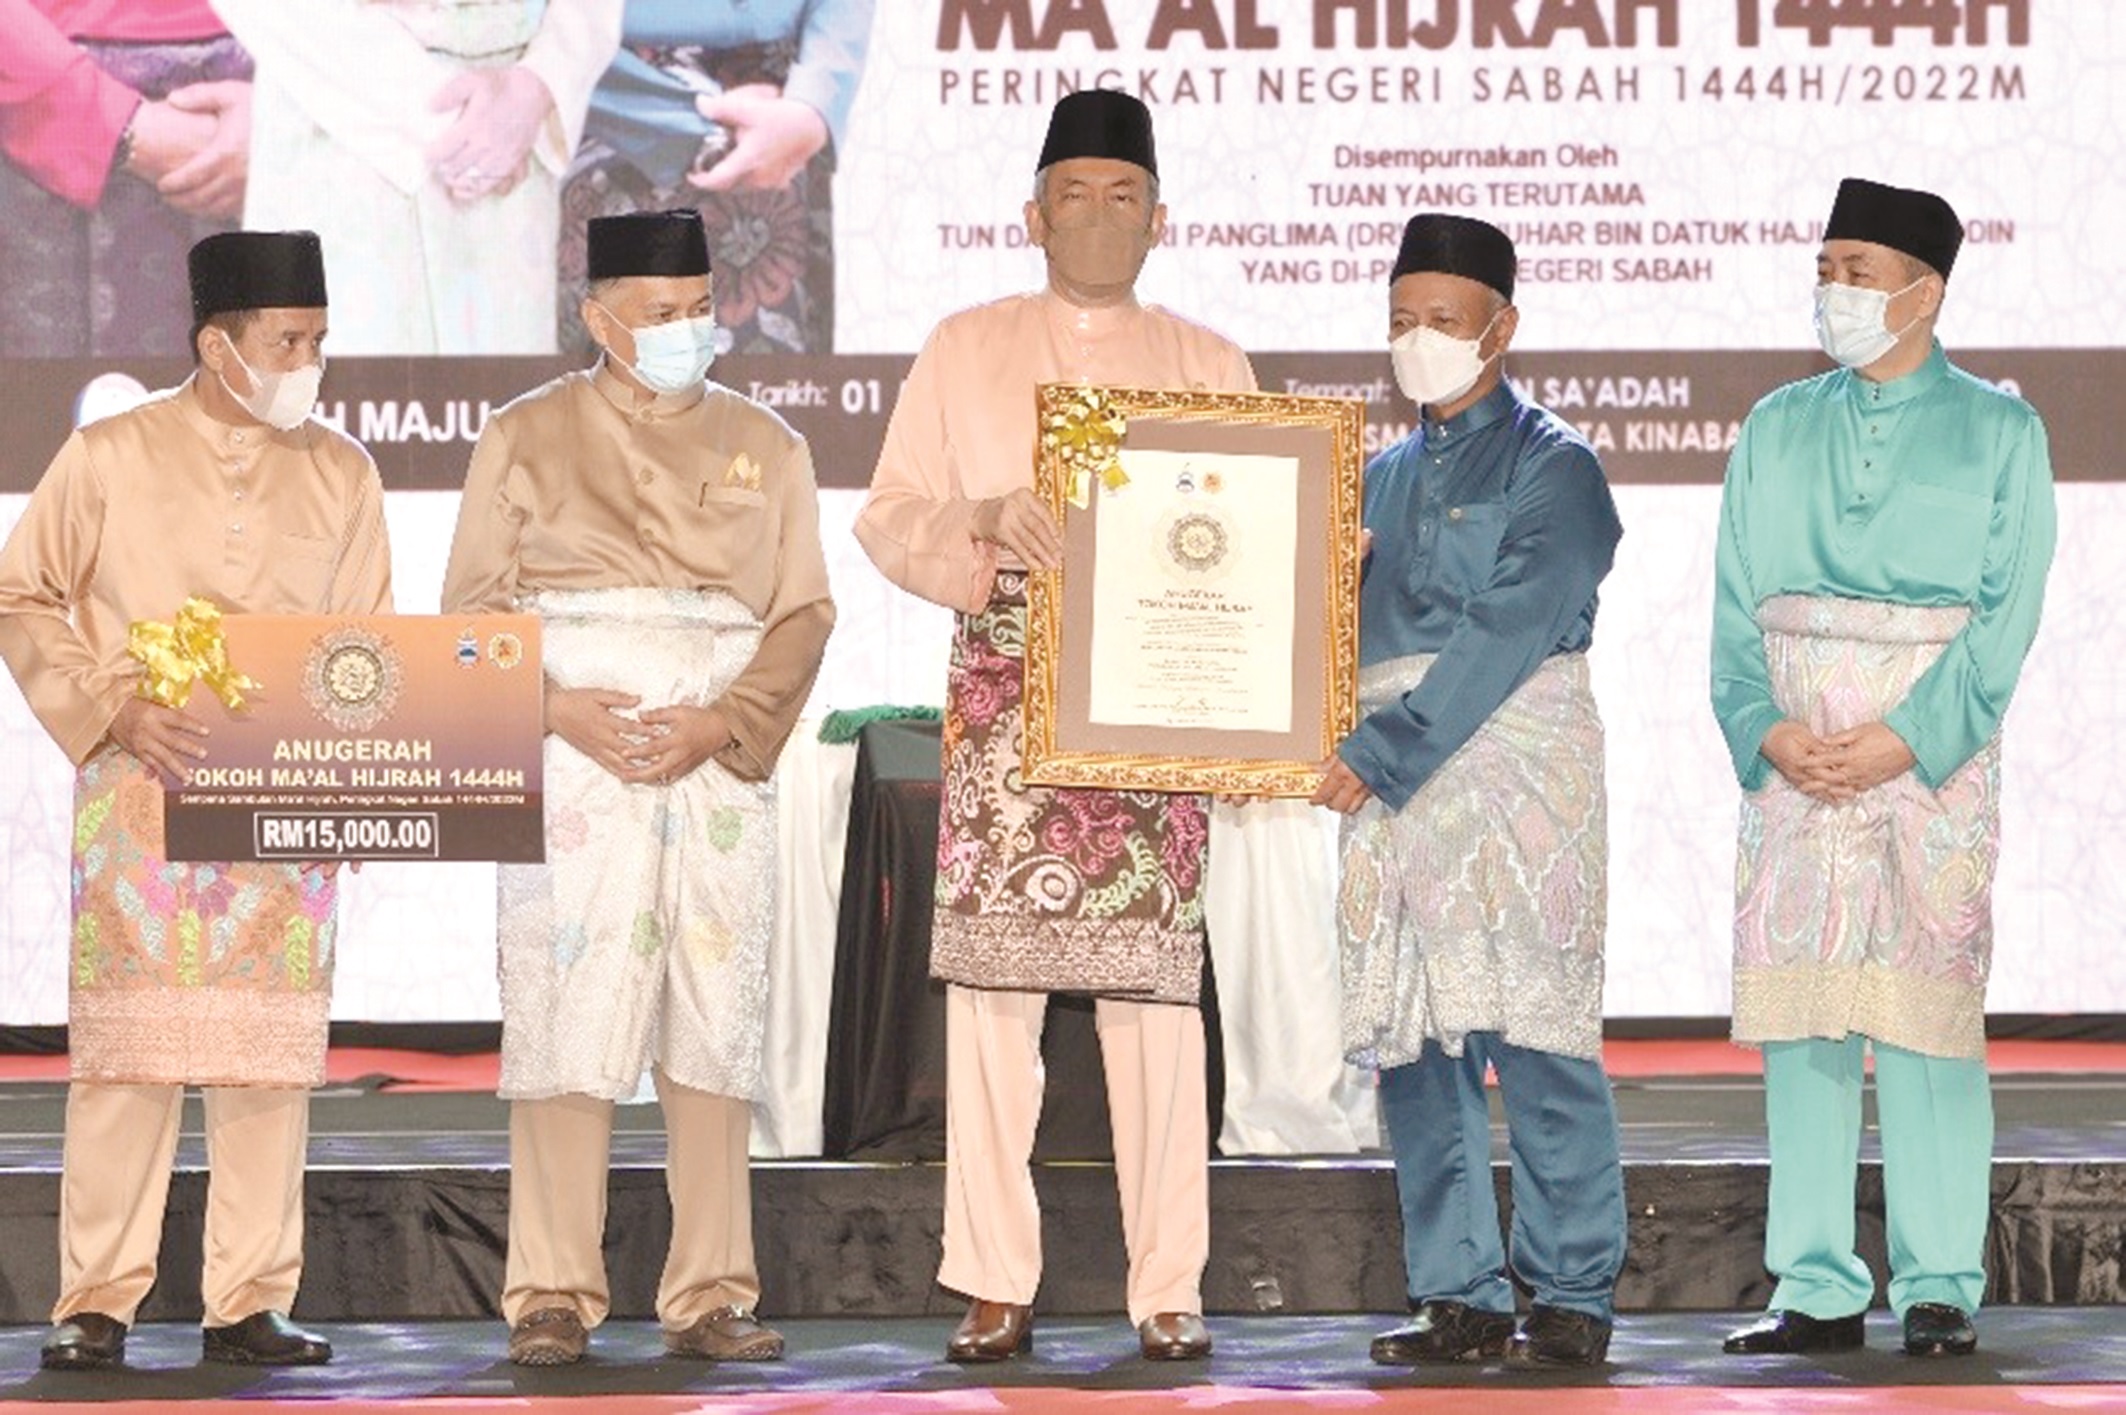 Sabah Maju Jaya producing results